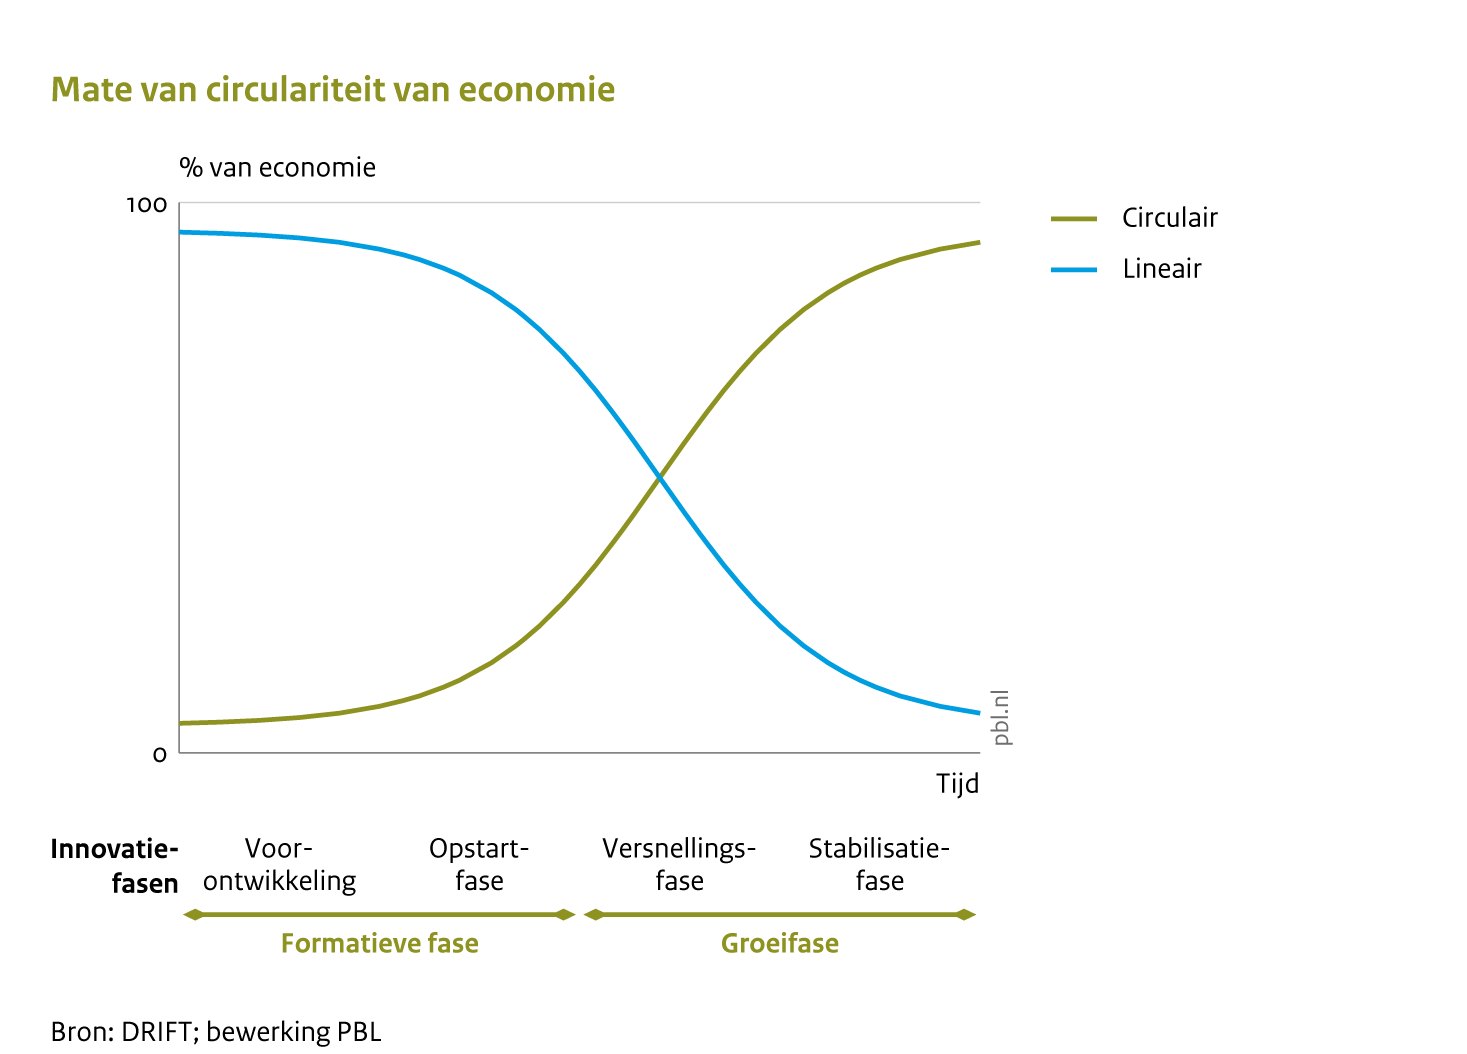 De mate van circulariteit van een economie door de tijd (lineair neemt af, circulariteit neemt toe)